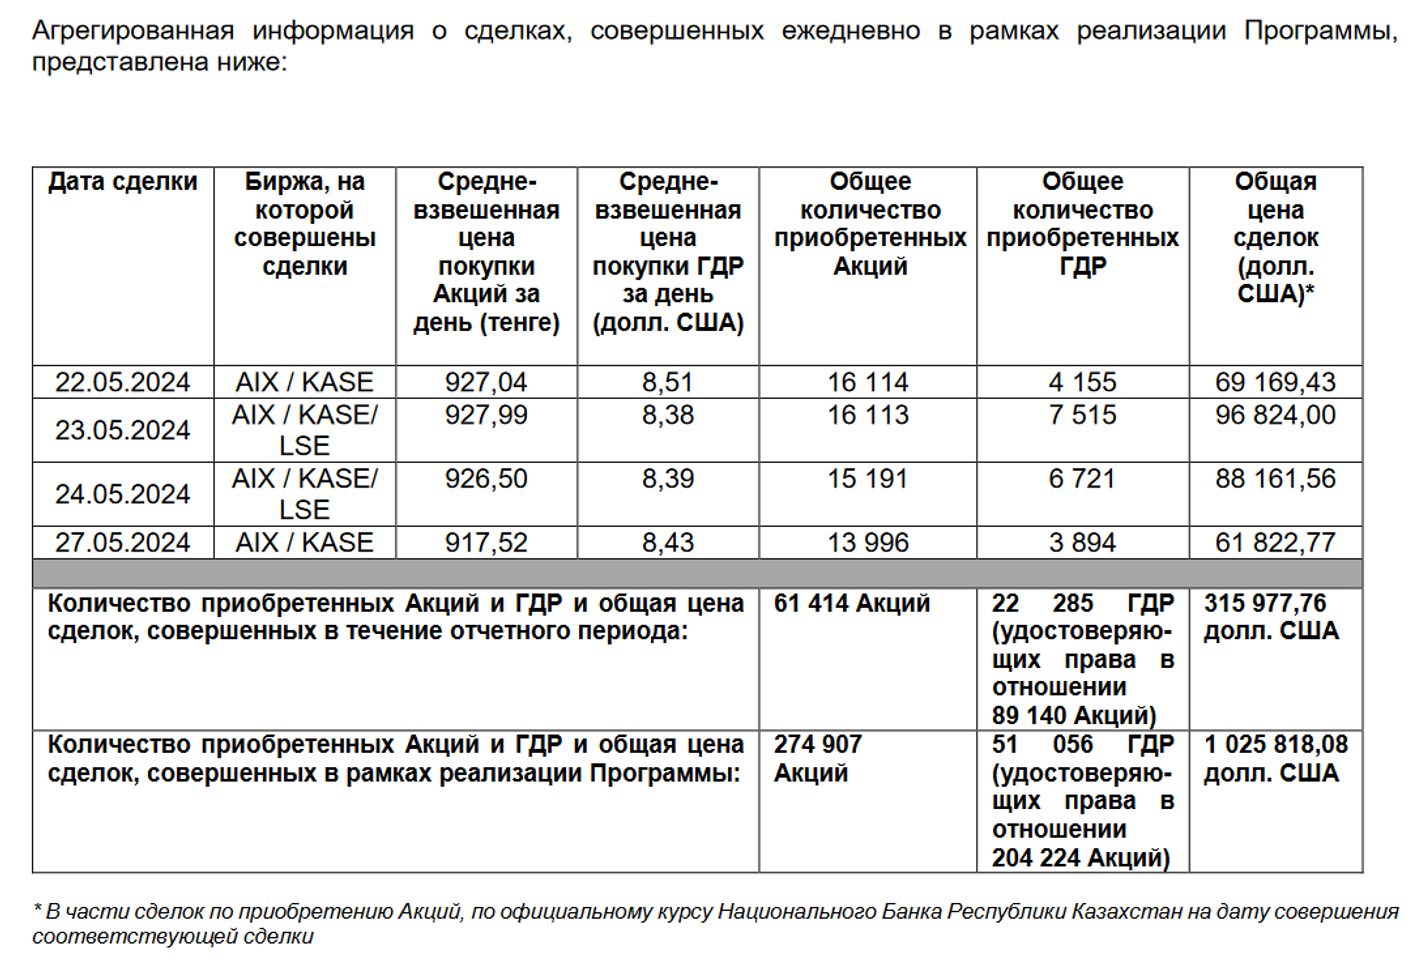 Эйр Астана выкупила свои акции и ГДР ещё на $315,9 тысячи  3039396 — Kapital.kz 